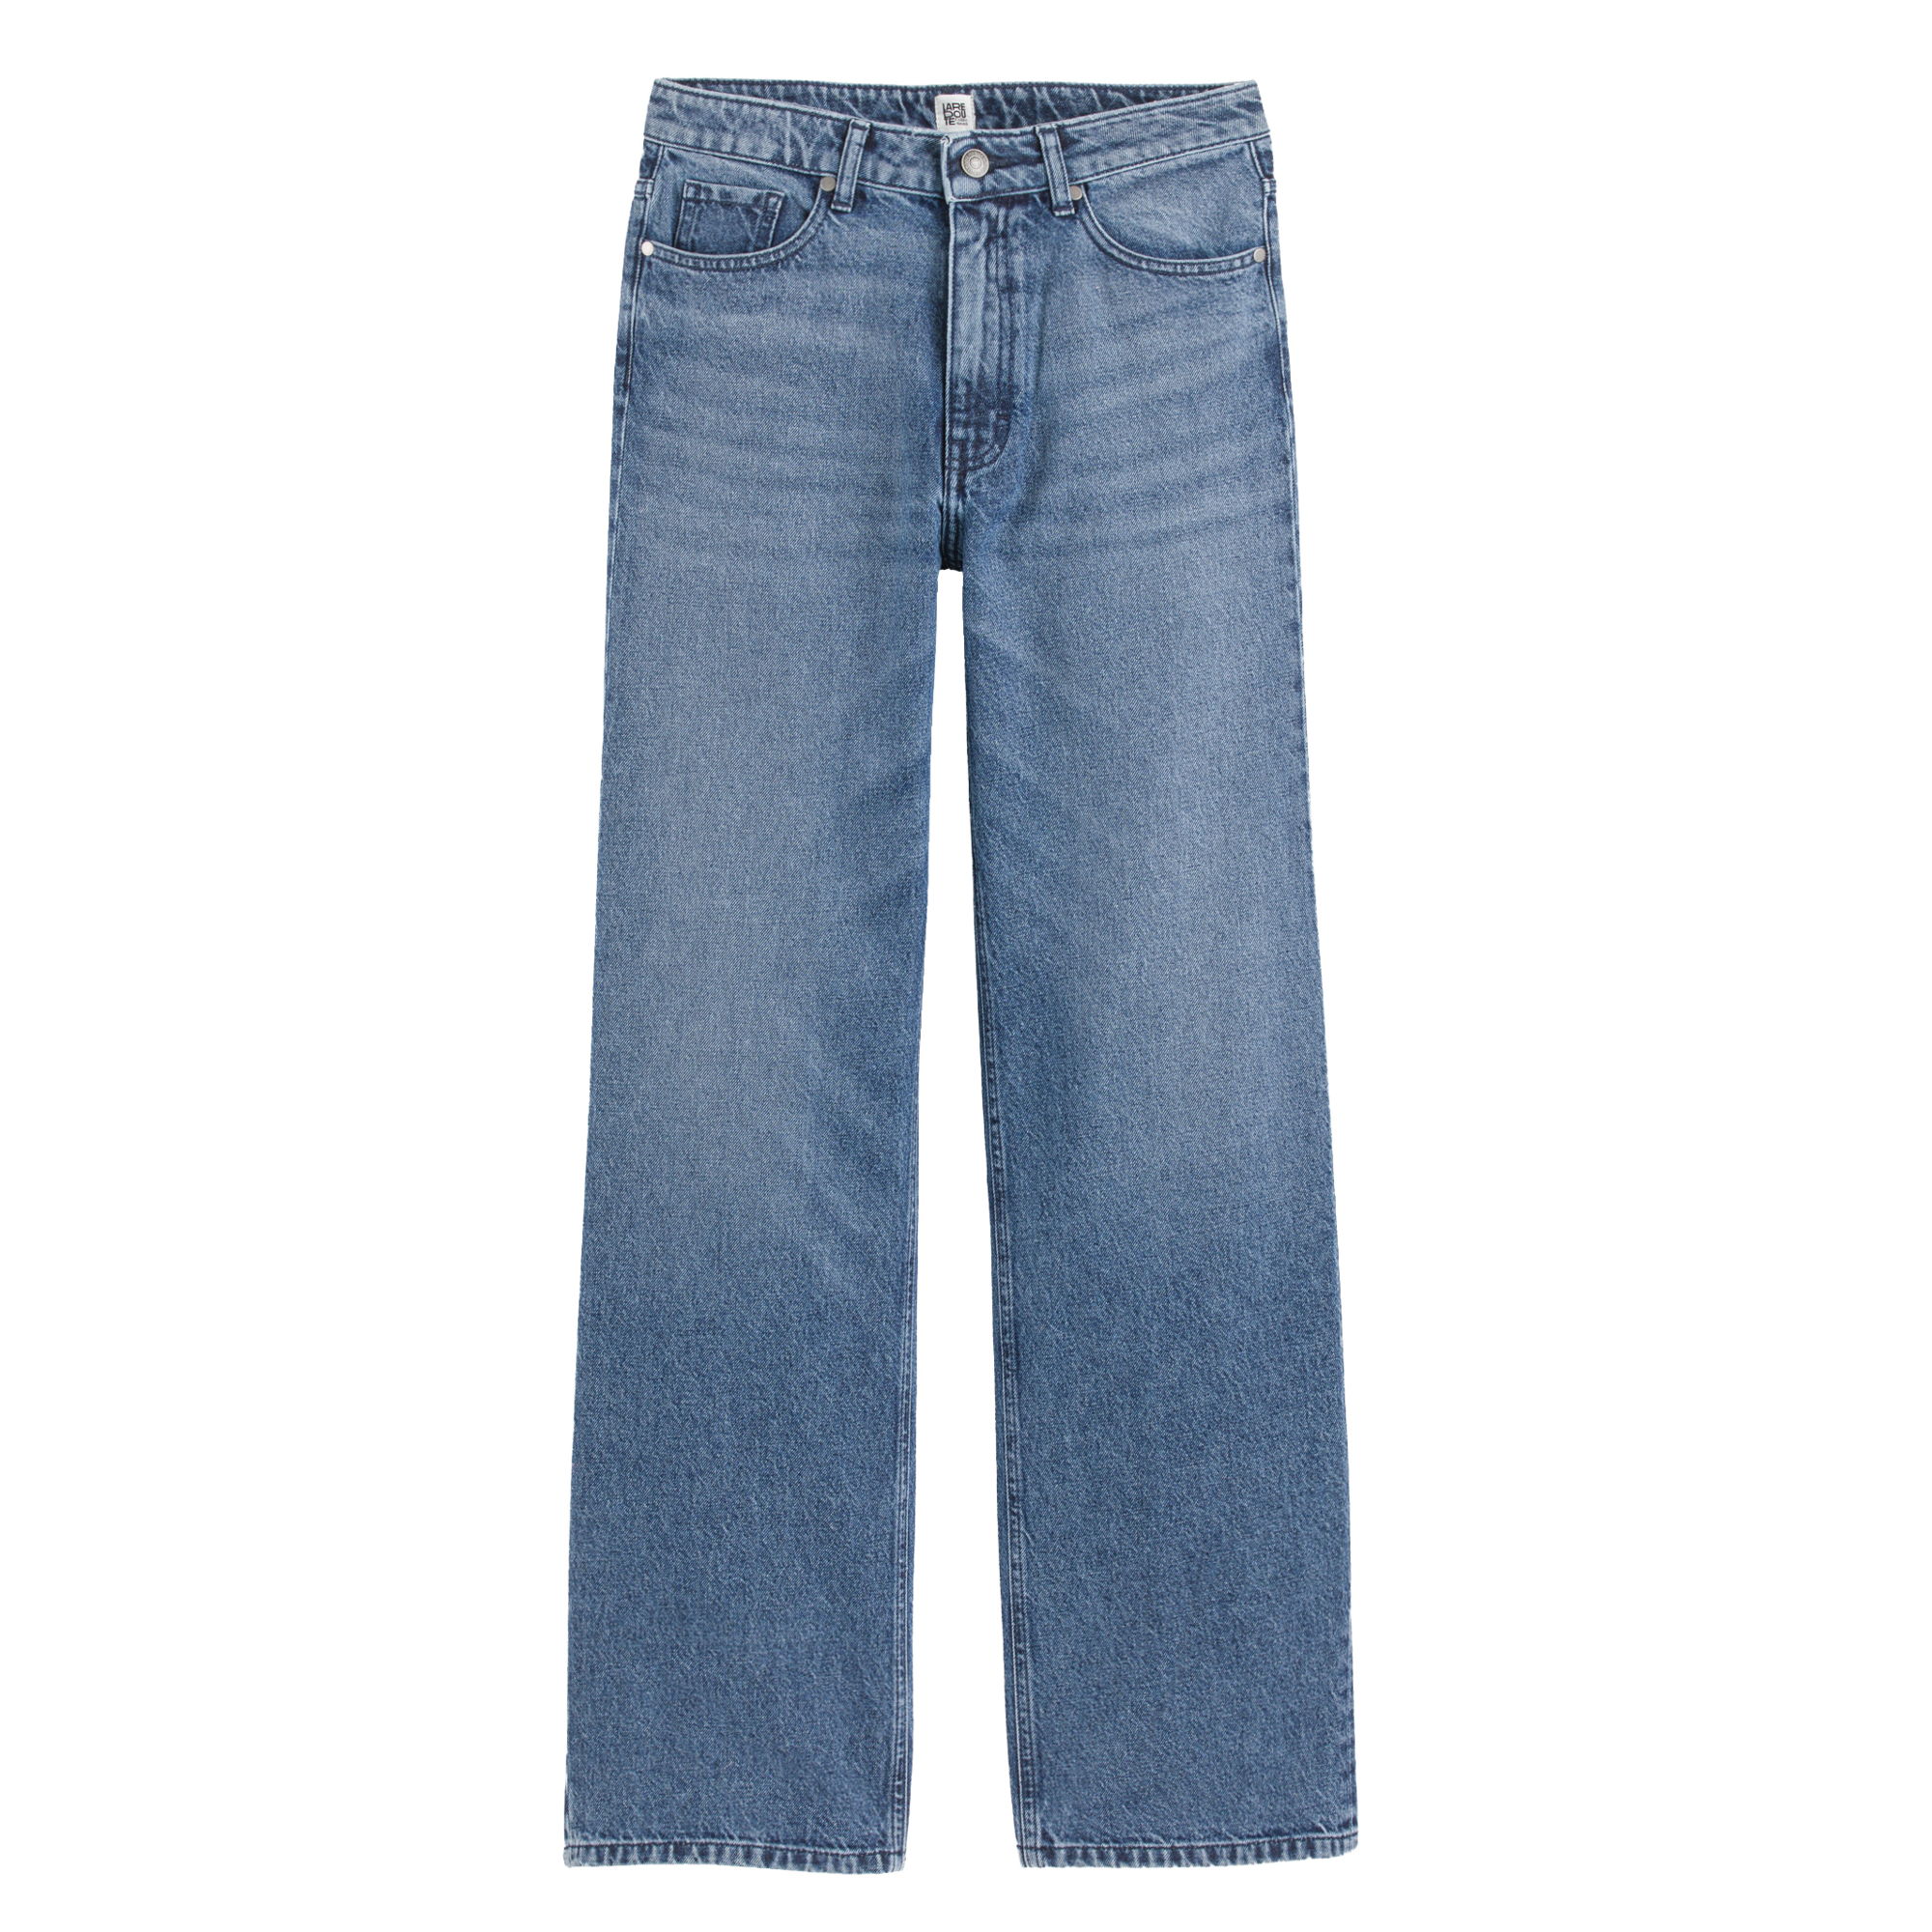 Wijde jeans met hoge taille_GMX112_54.99EUR